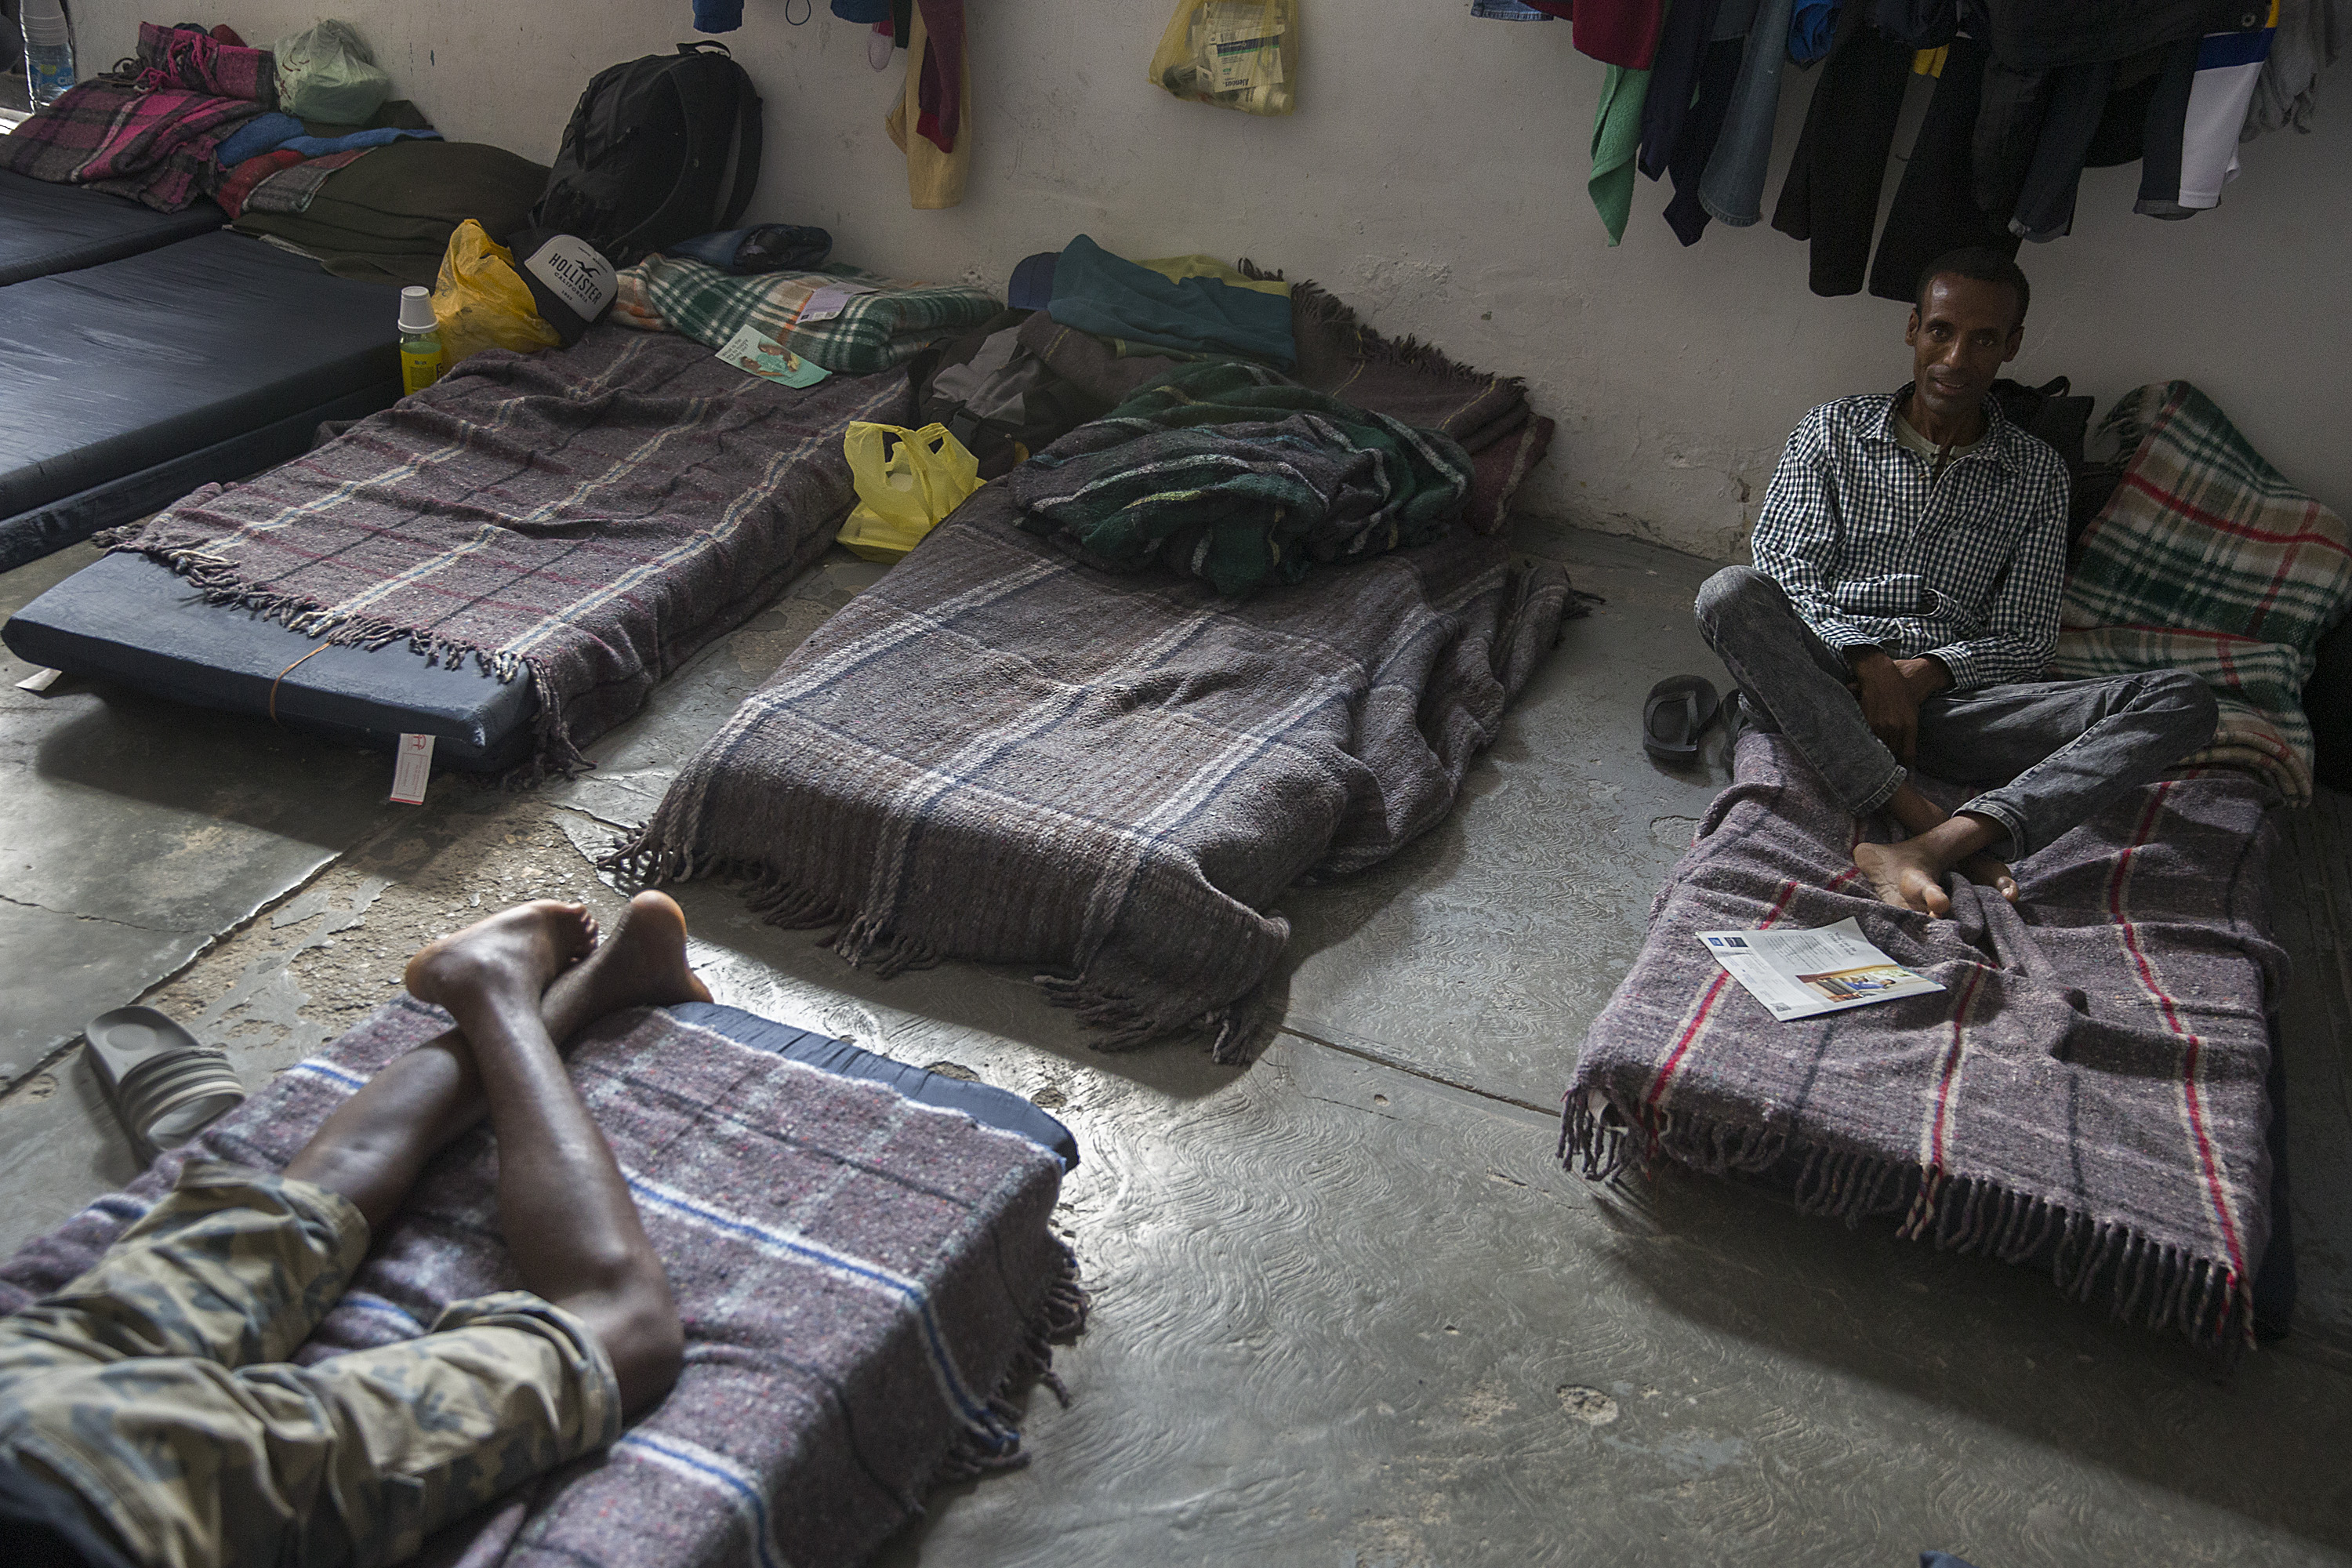 La condiciones de vida de los migrantes en el sur de México son complicadas. (Foto Prensa Libre: AFP)